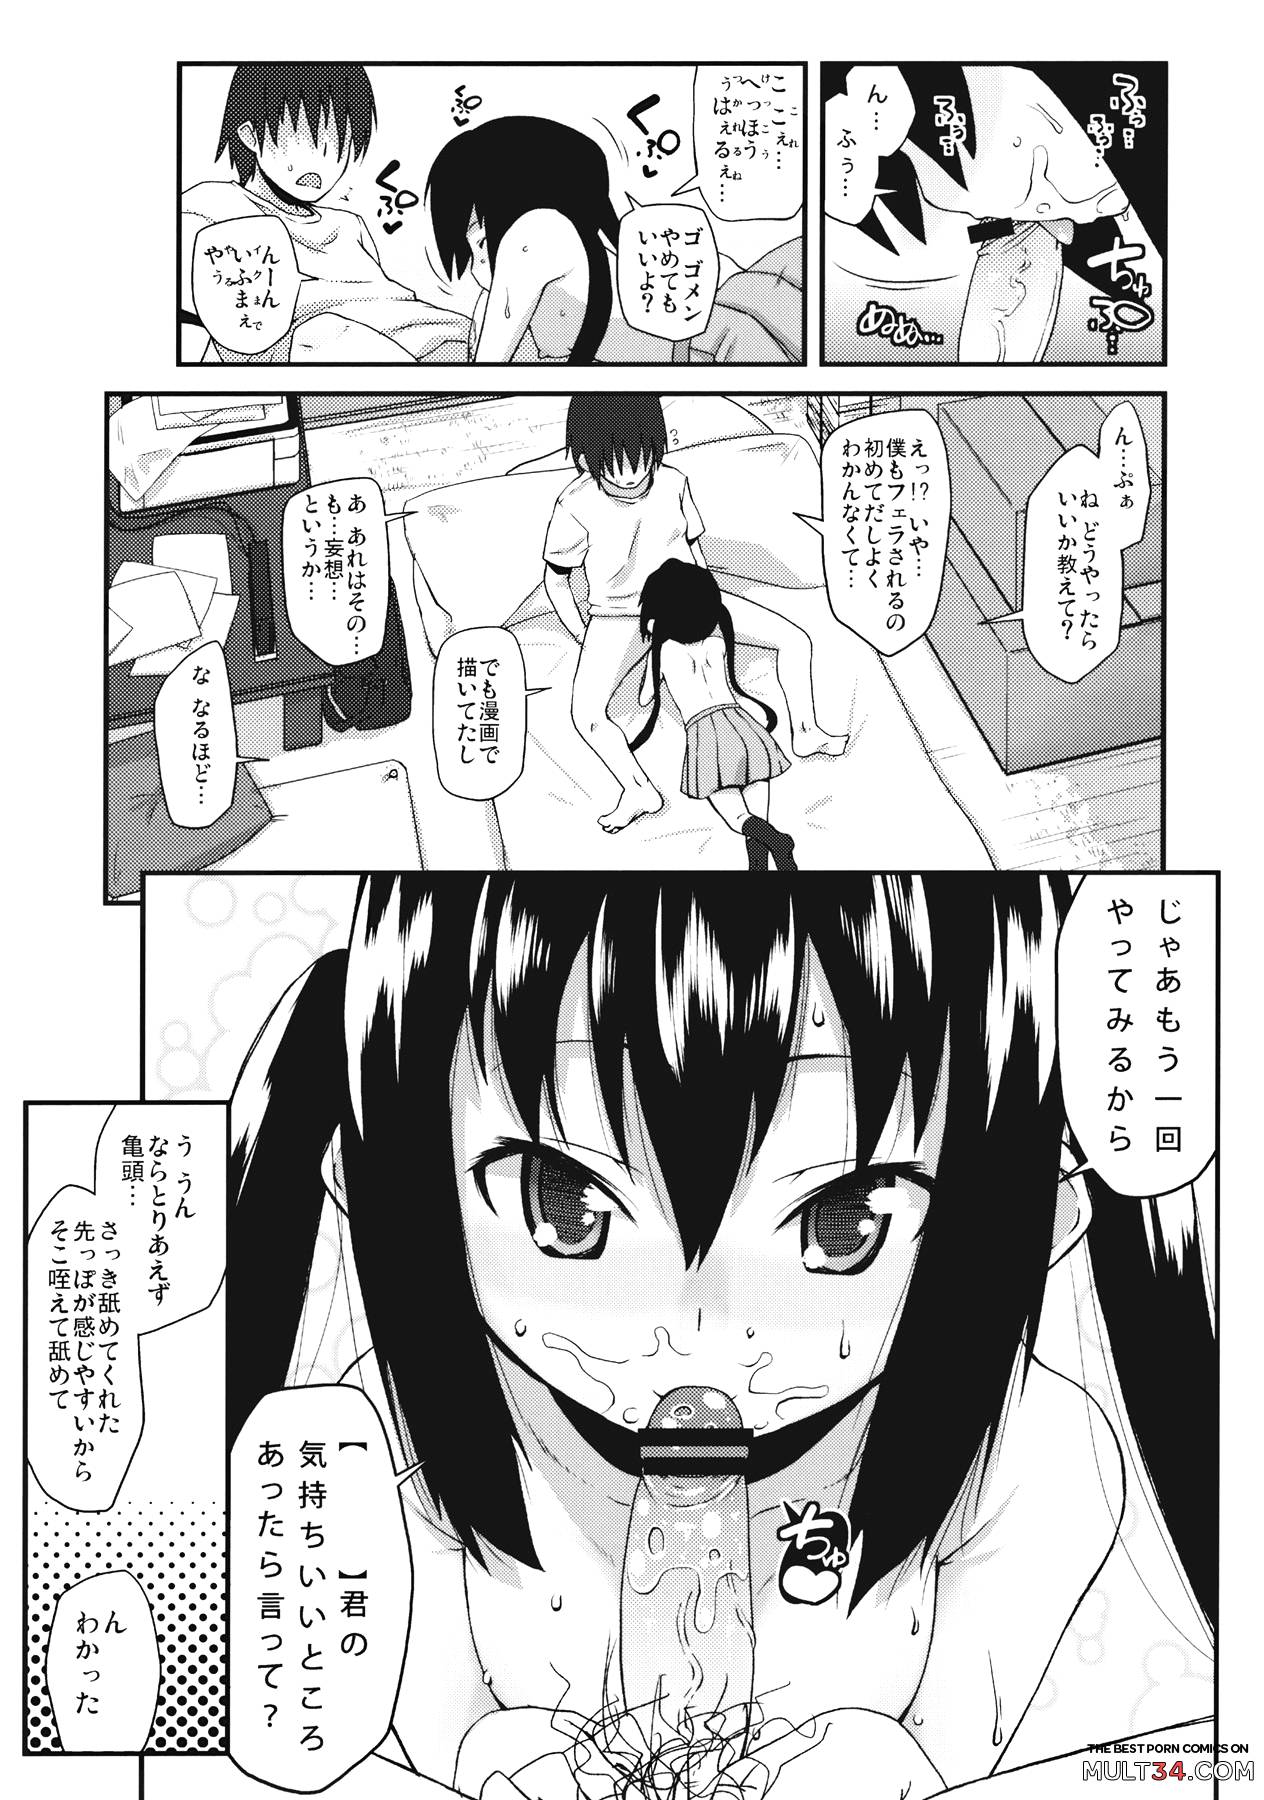 Moshikano!! page 9